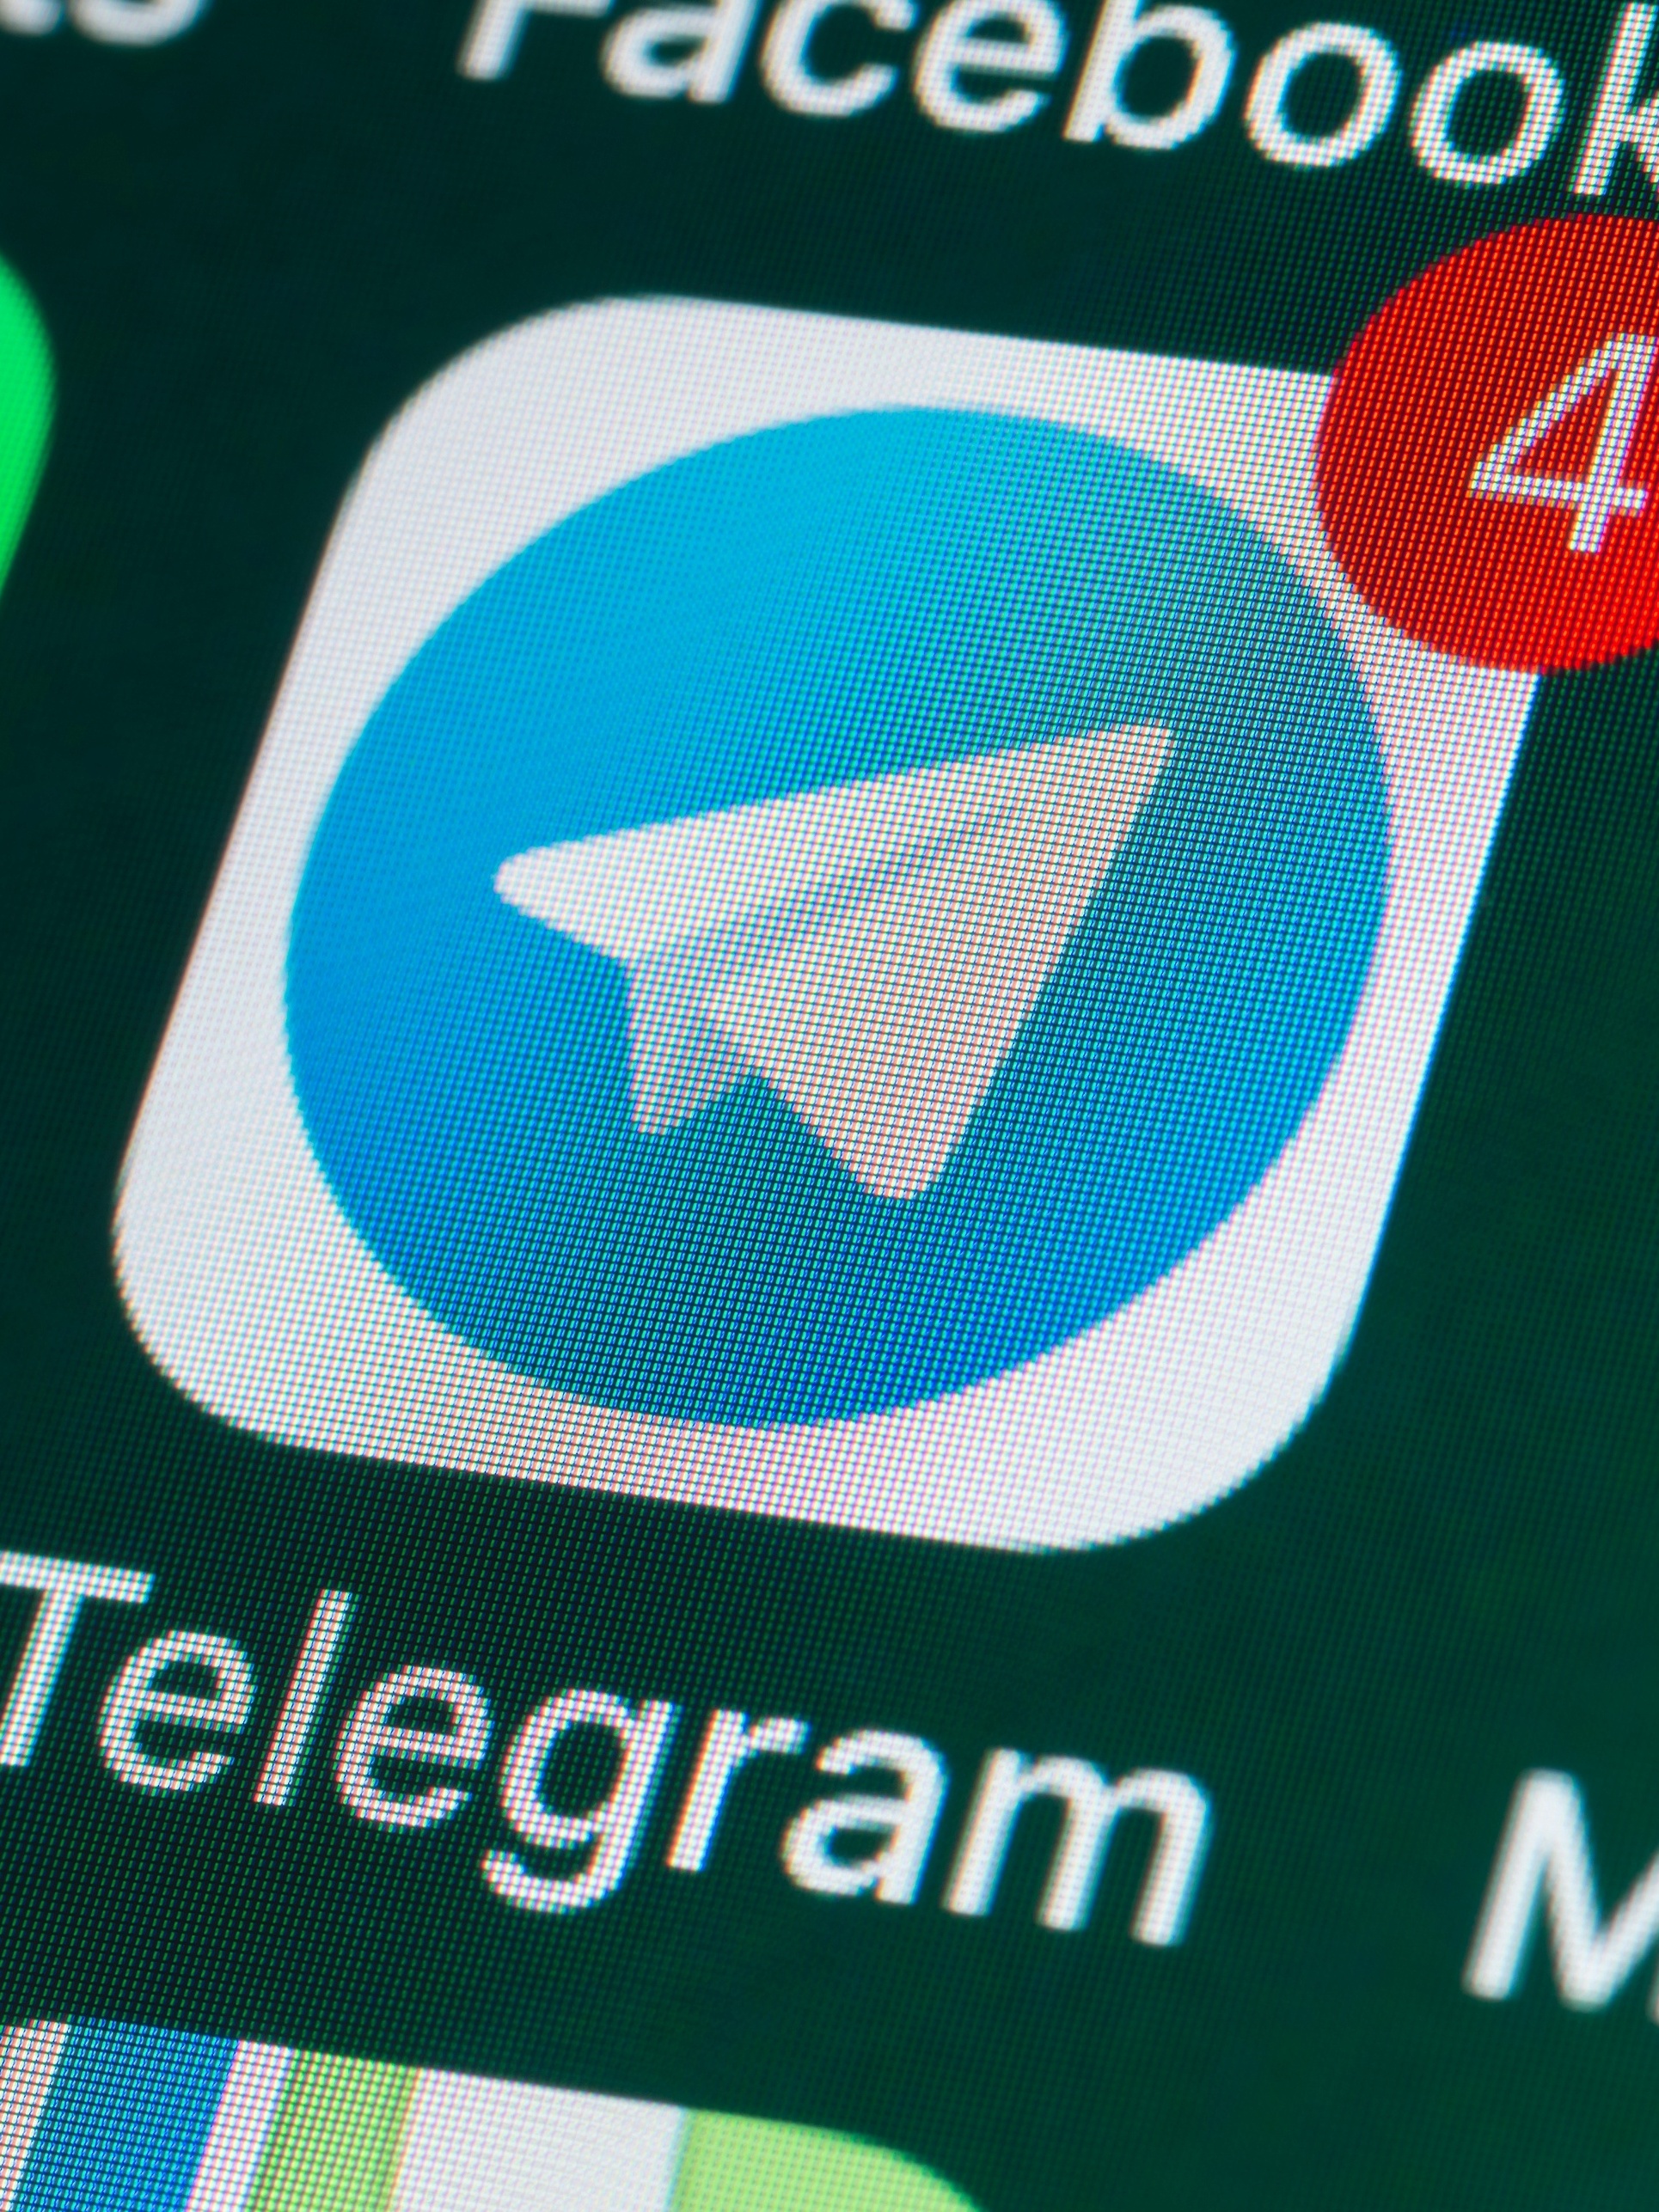 Como Assistir Séries Grátis pelo Telegram - Aplicativos Grátis